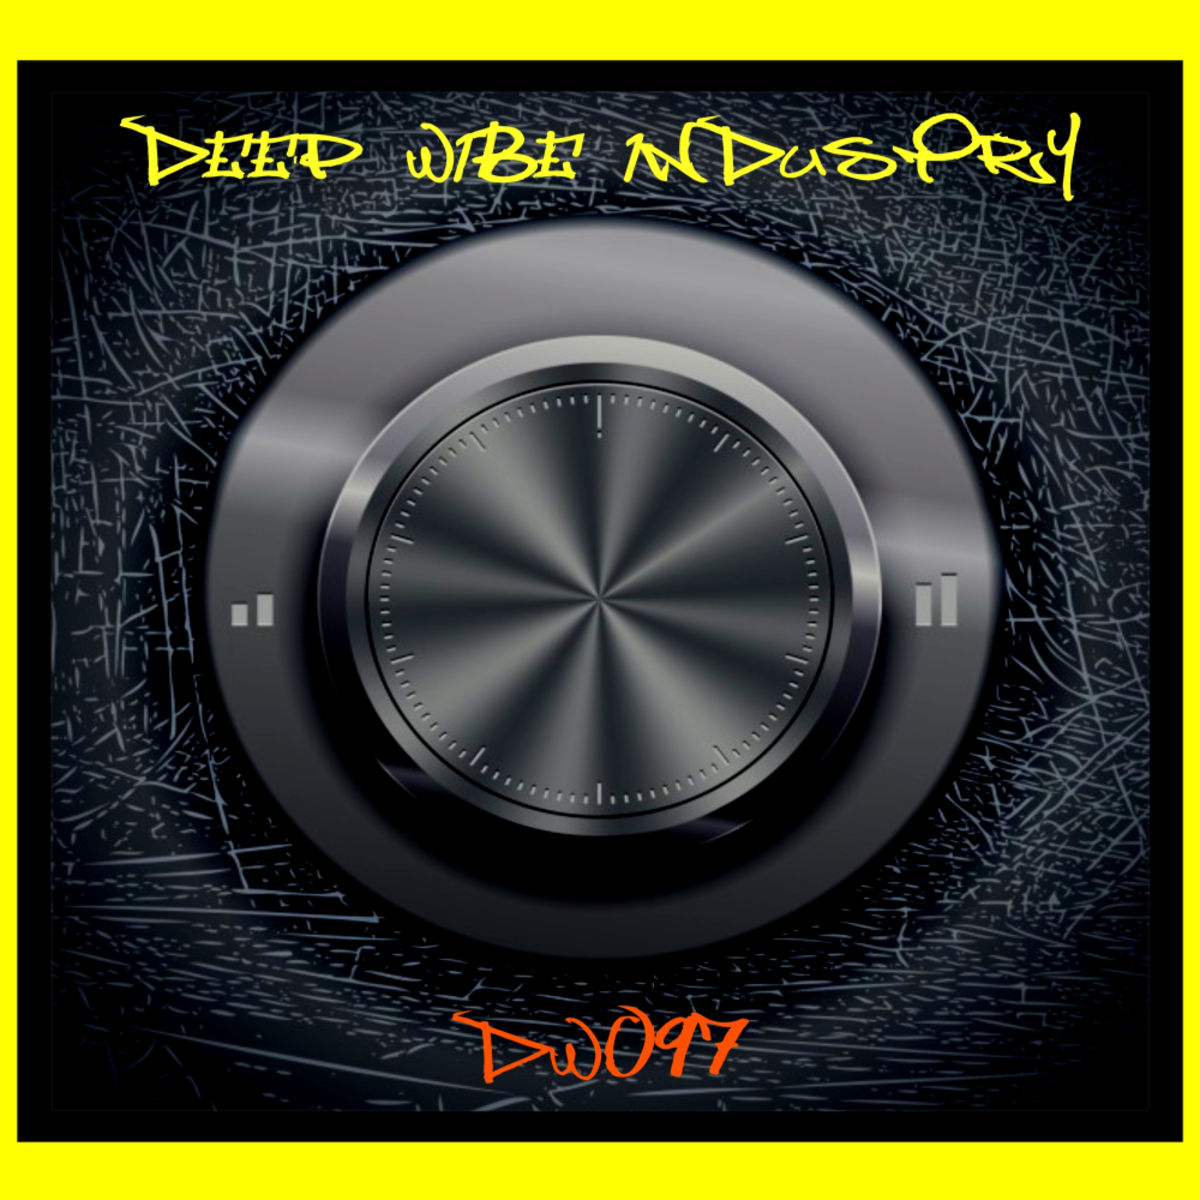 Disco Ball'z - Rock Da Groovy / Deep Wibe Industry